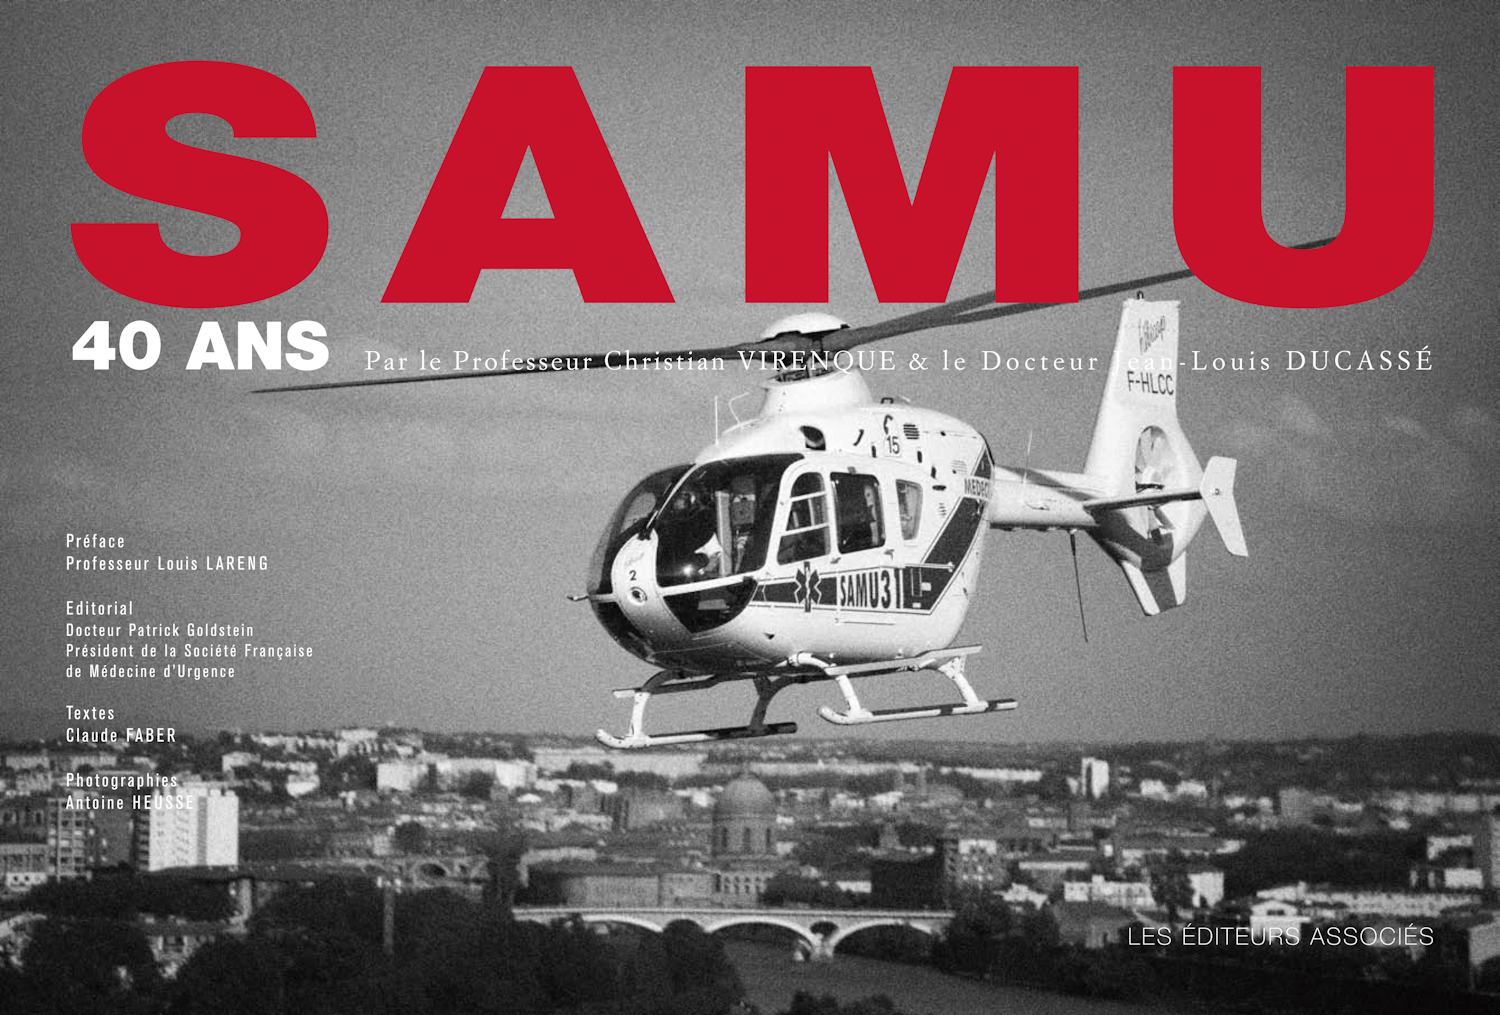 Couverture du livre des 40 ans du SAMU avec l'hélicoptère du SAMU comme sujet principal